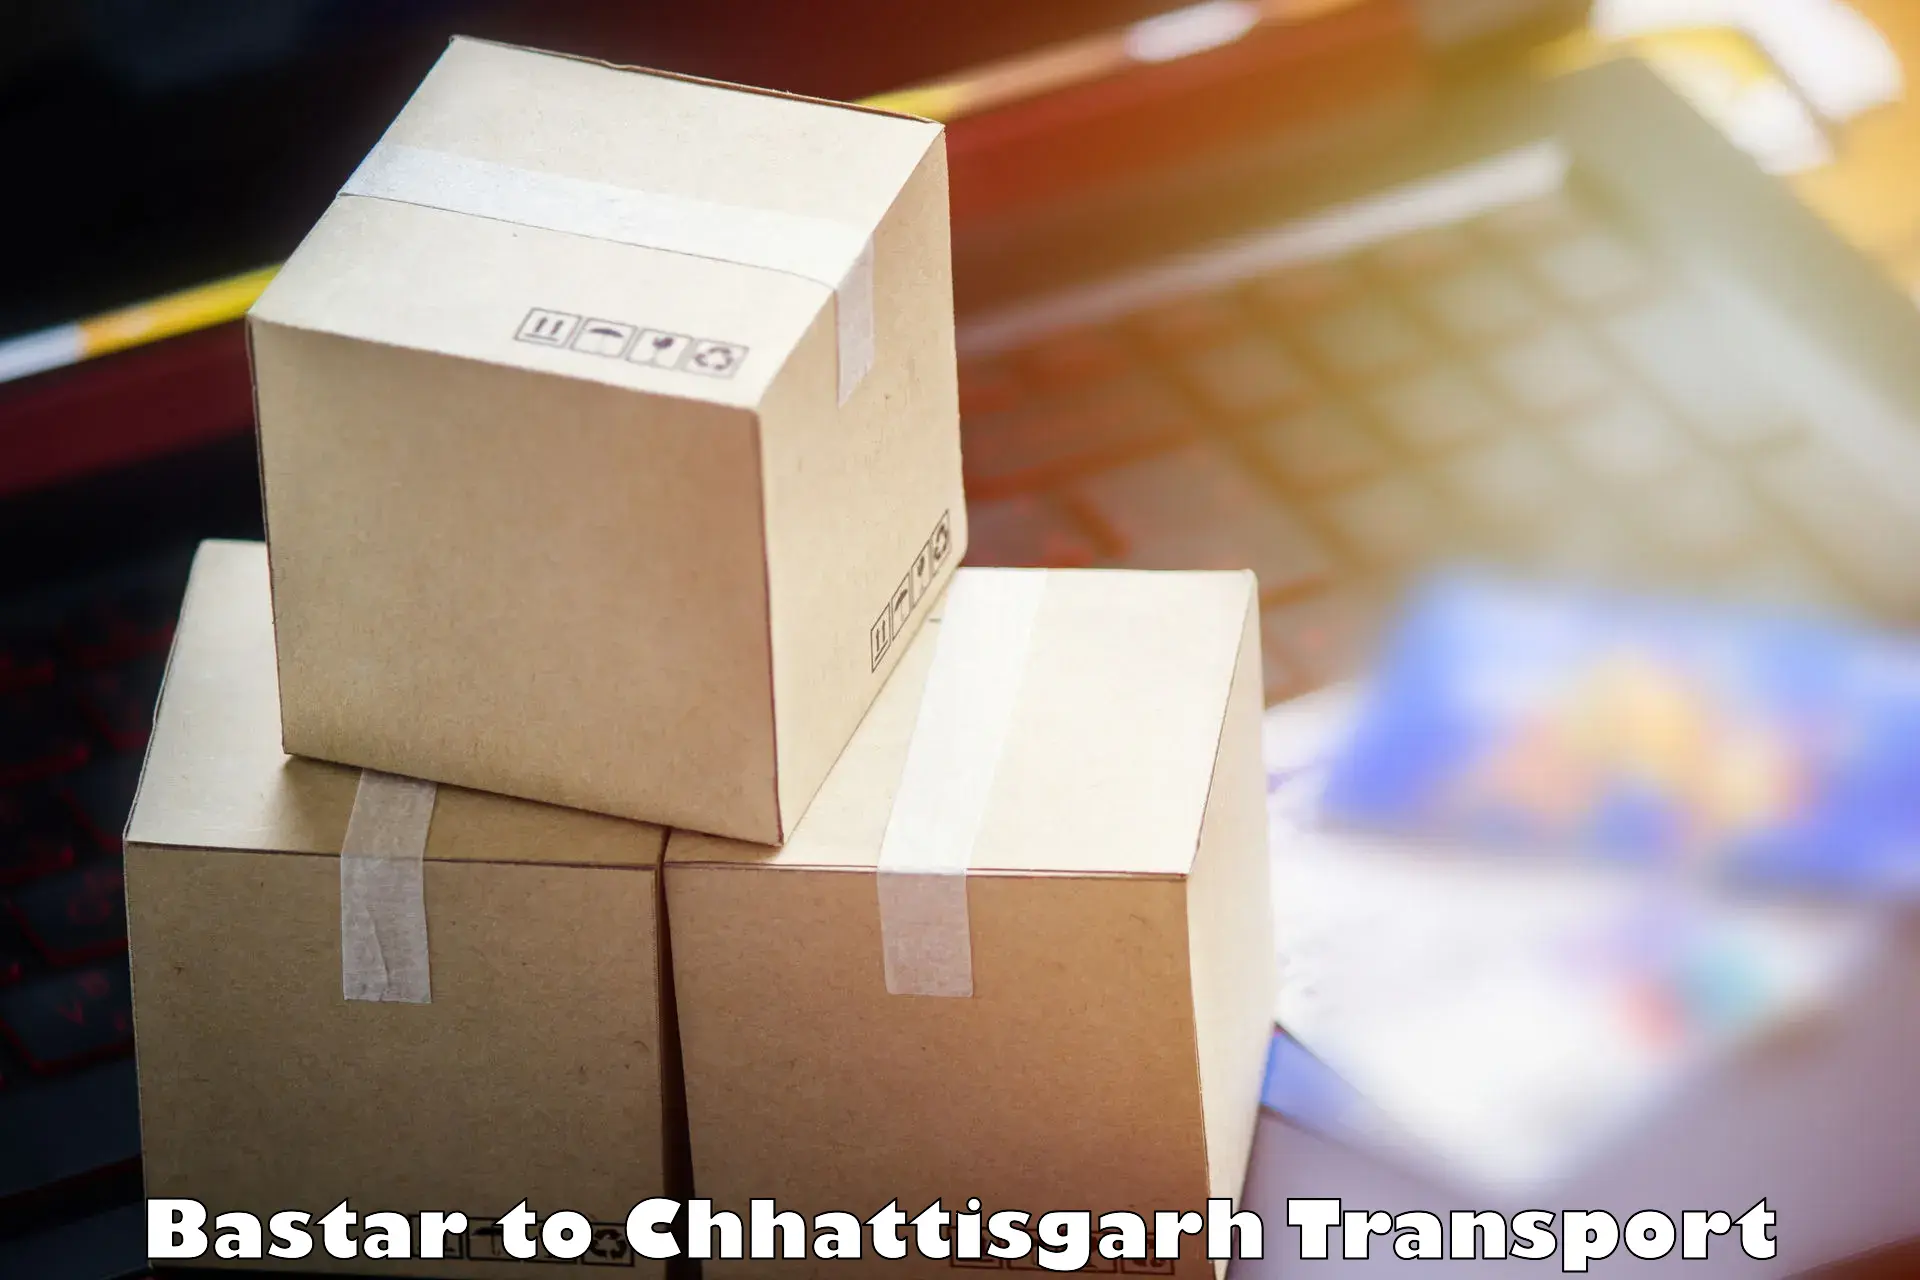 Commercial transport service Bastar to Ramanujganj